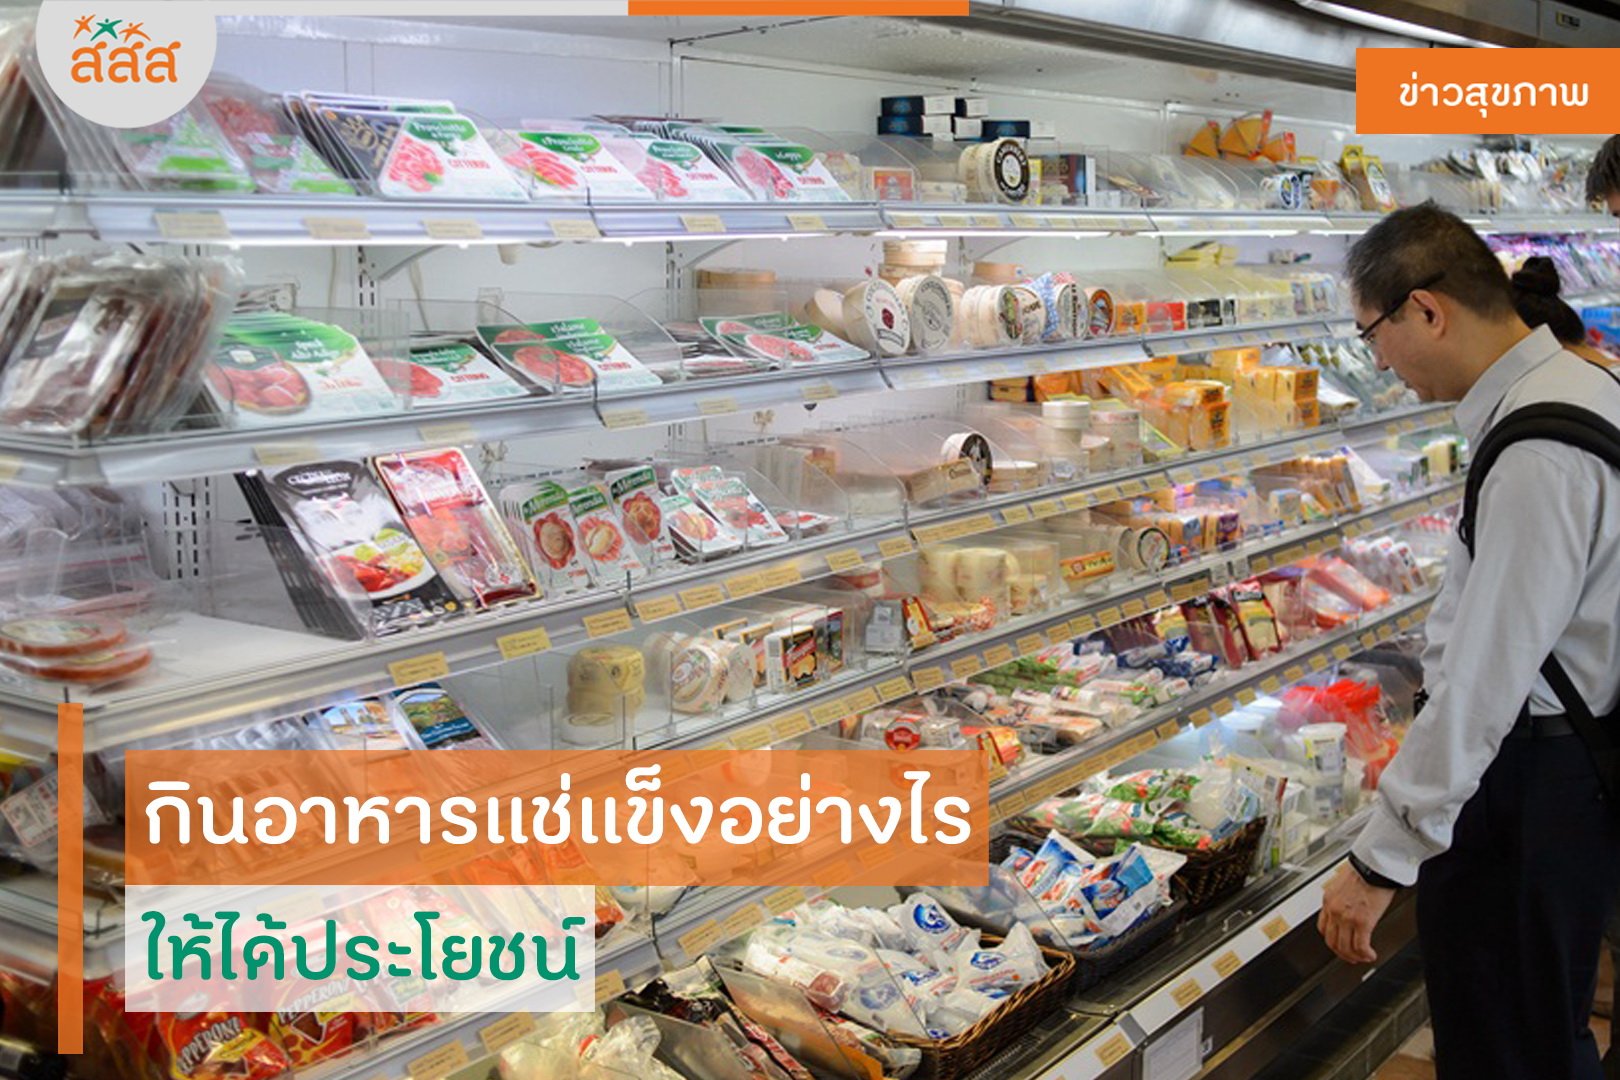 กินอาหารแช่แข็งอย่างไร ให้ได้ประโยชน์ thaihealth